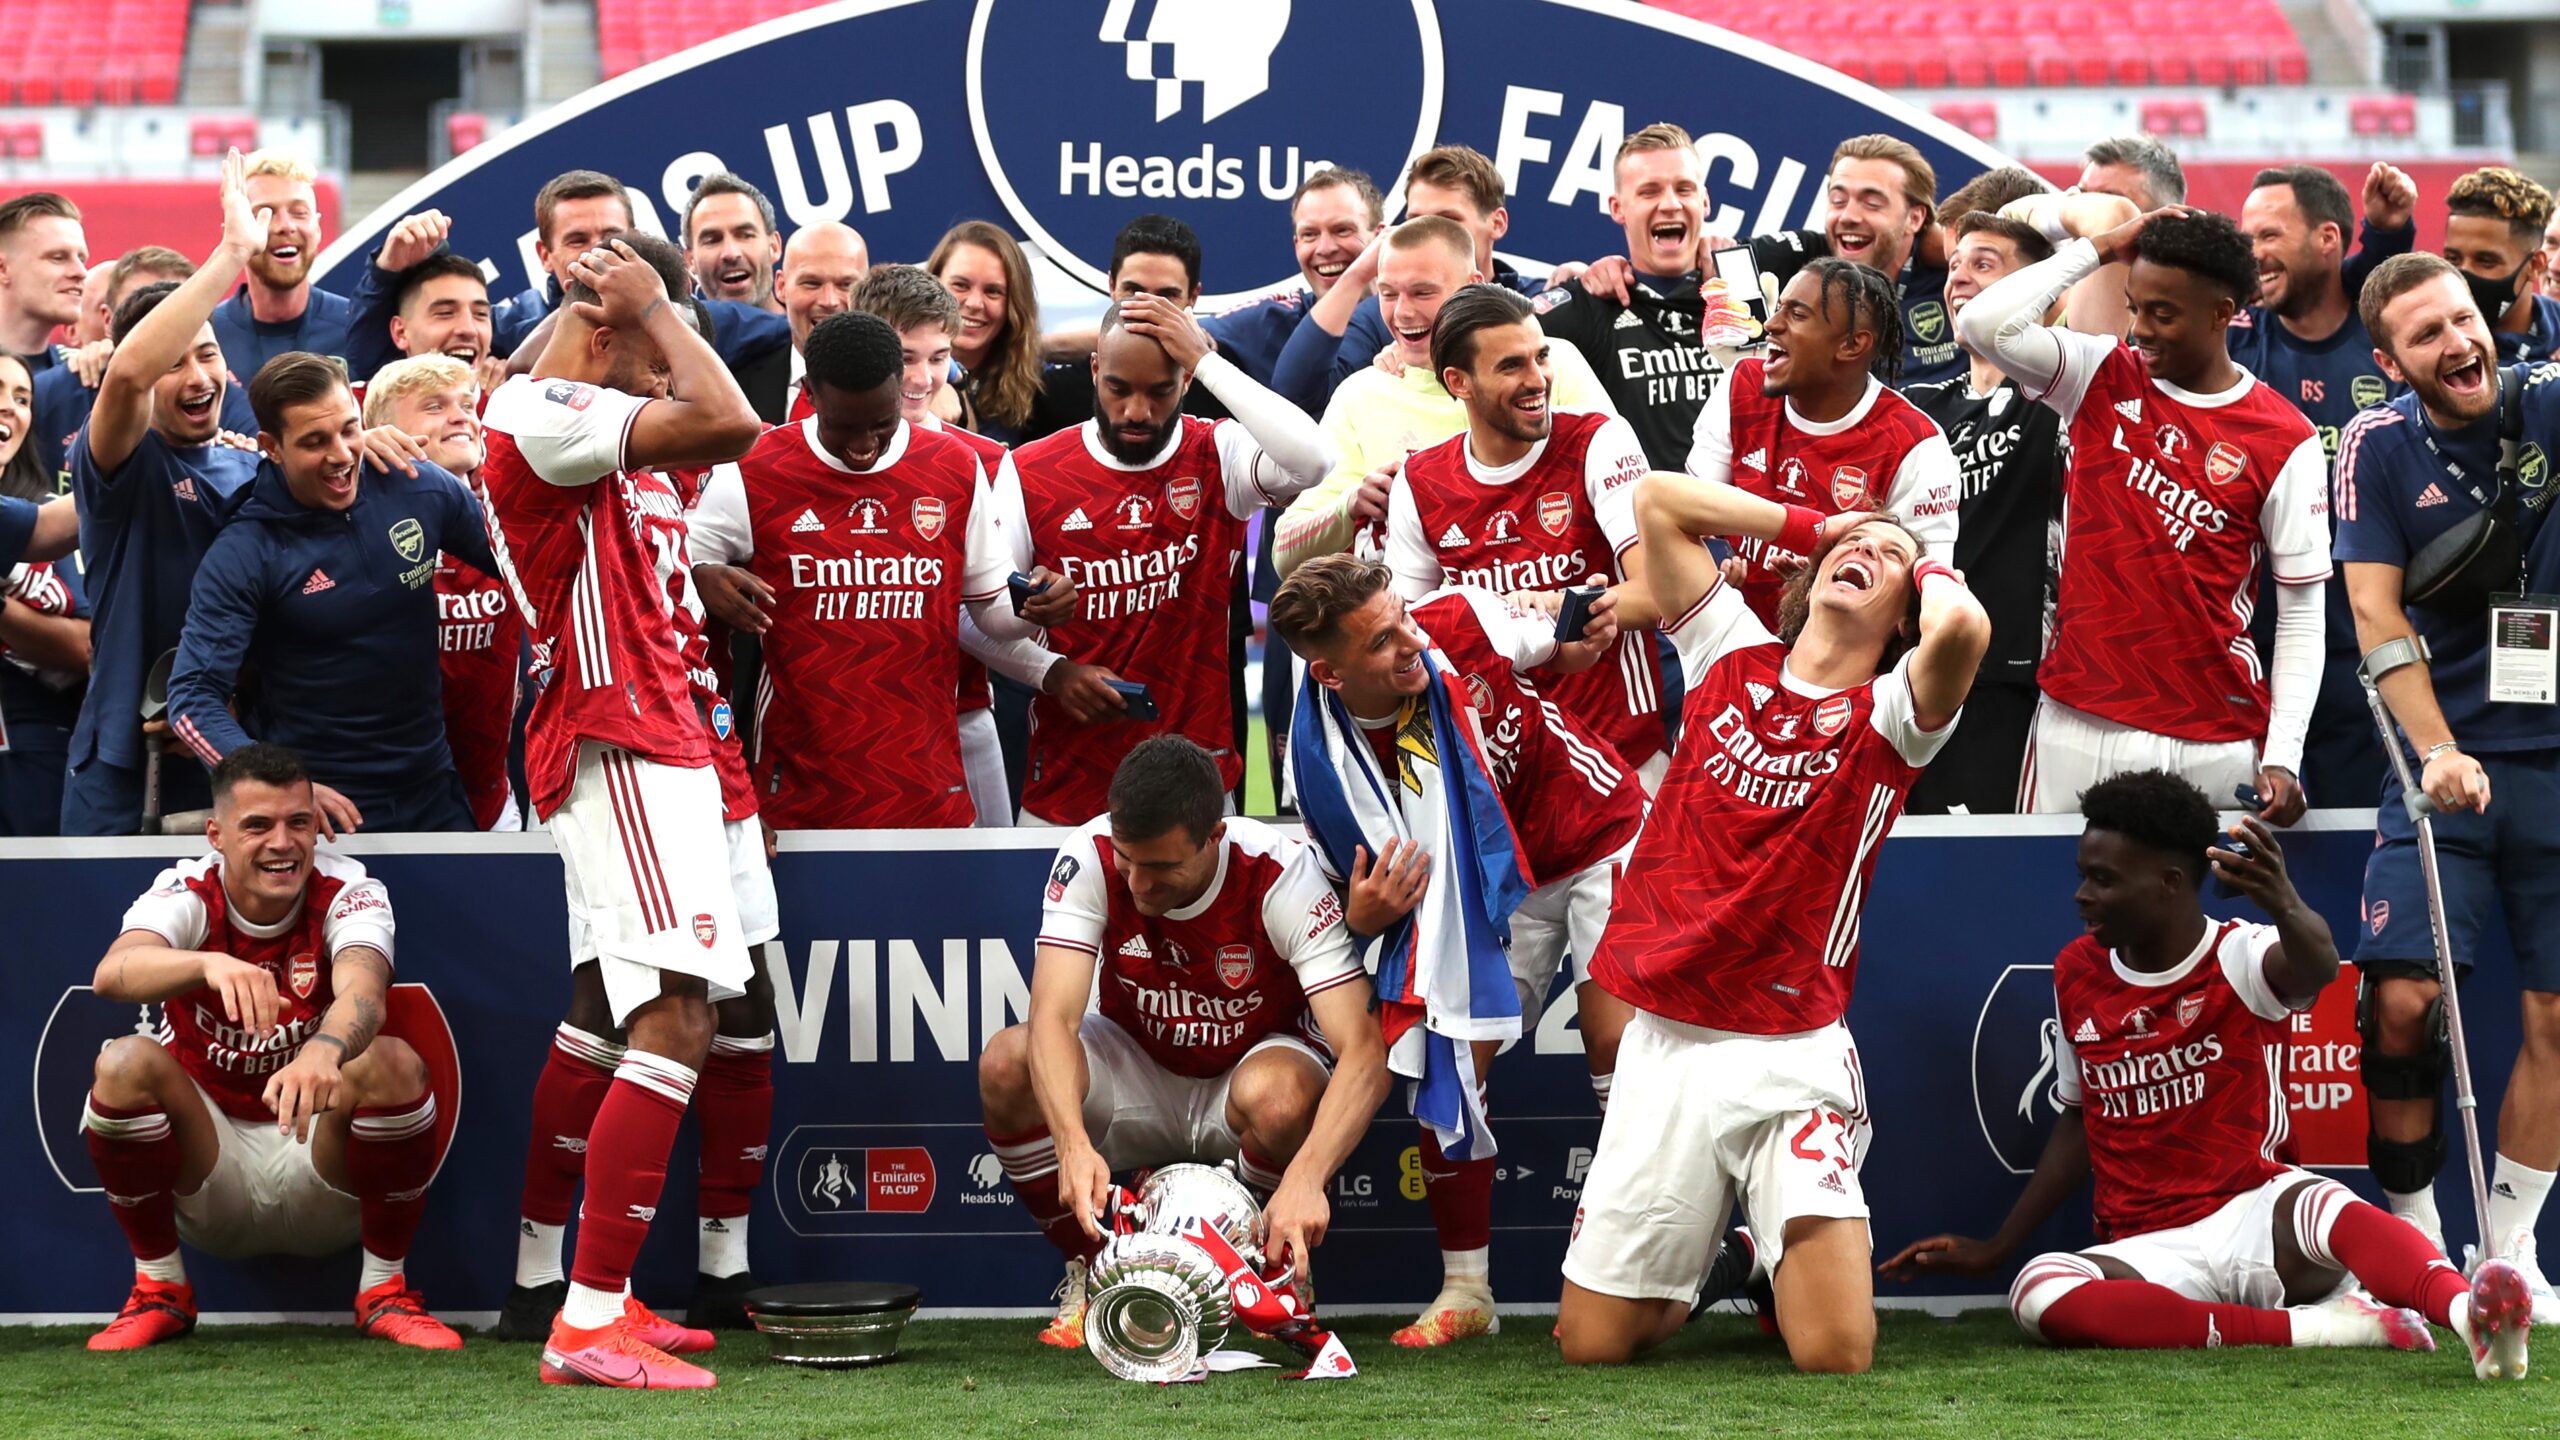 Arsenal hiện giữ nhiều Cup vàng FA Cup nhất